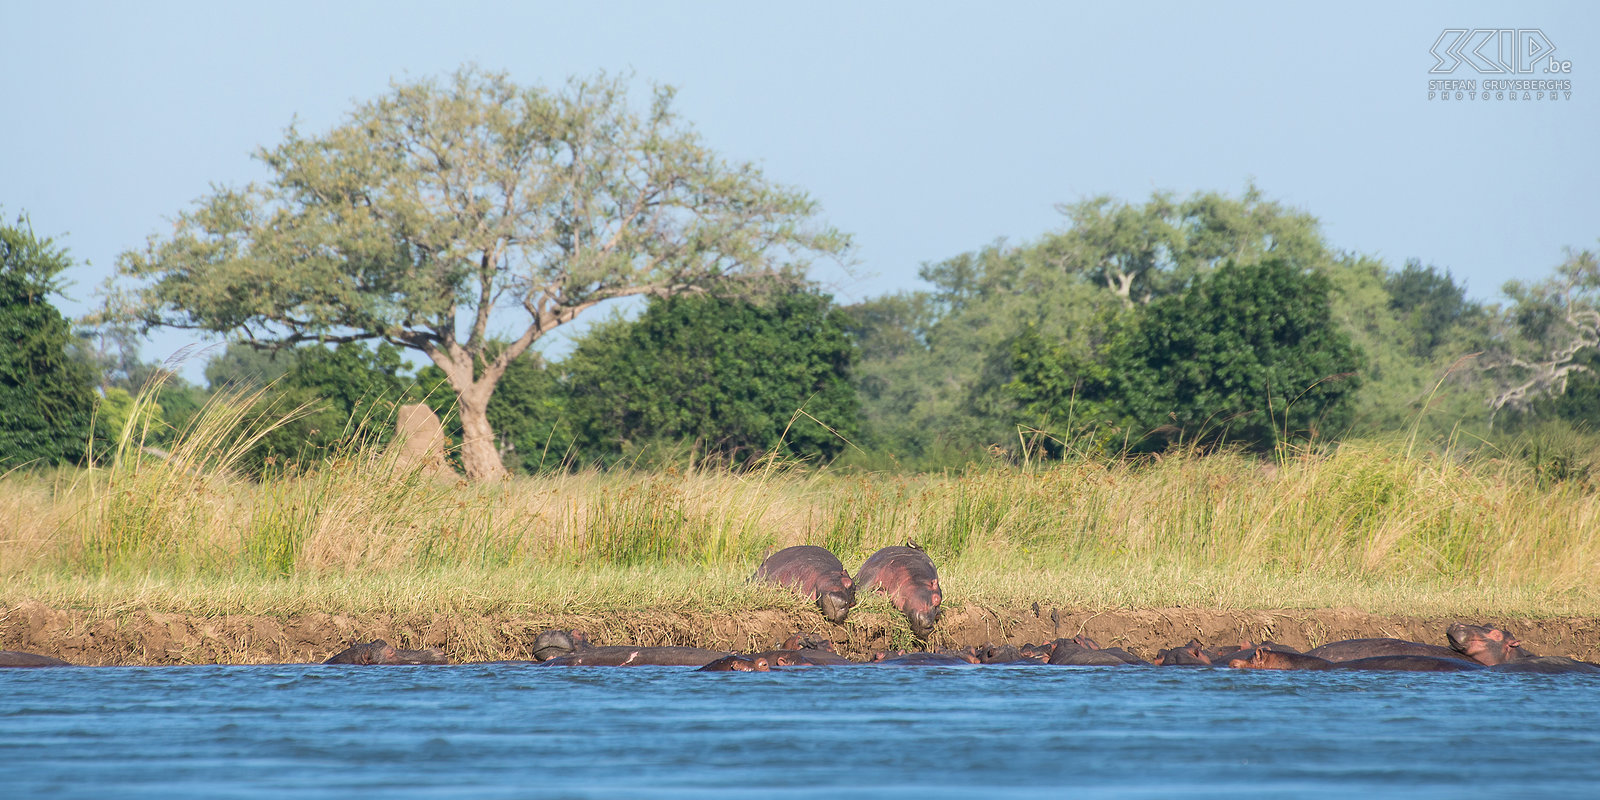 Lower Zambezi - Mana Pools - Nijlpaarden Toen we aan de Zimbabwaanse kant het Mana Pools national park bereikt hadden, zagen we meer zoogdieren zoals impala’s en olifanten en natuurlijk waren er nog steeds heel veel nijlpaarden. Stefan Cruysberghs